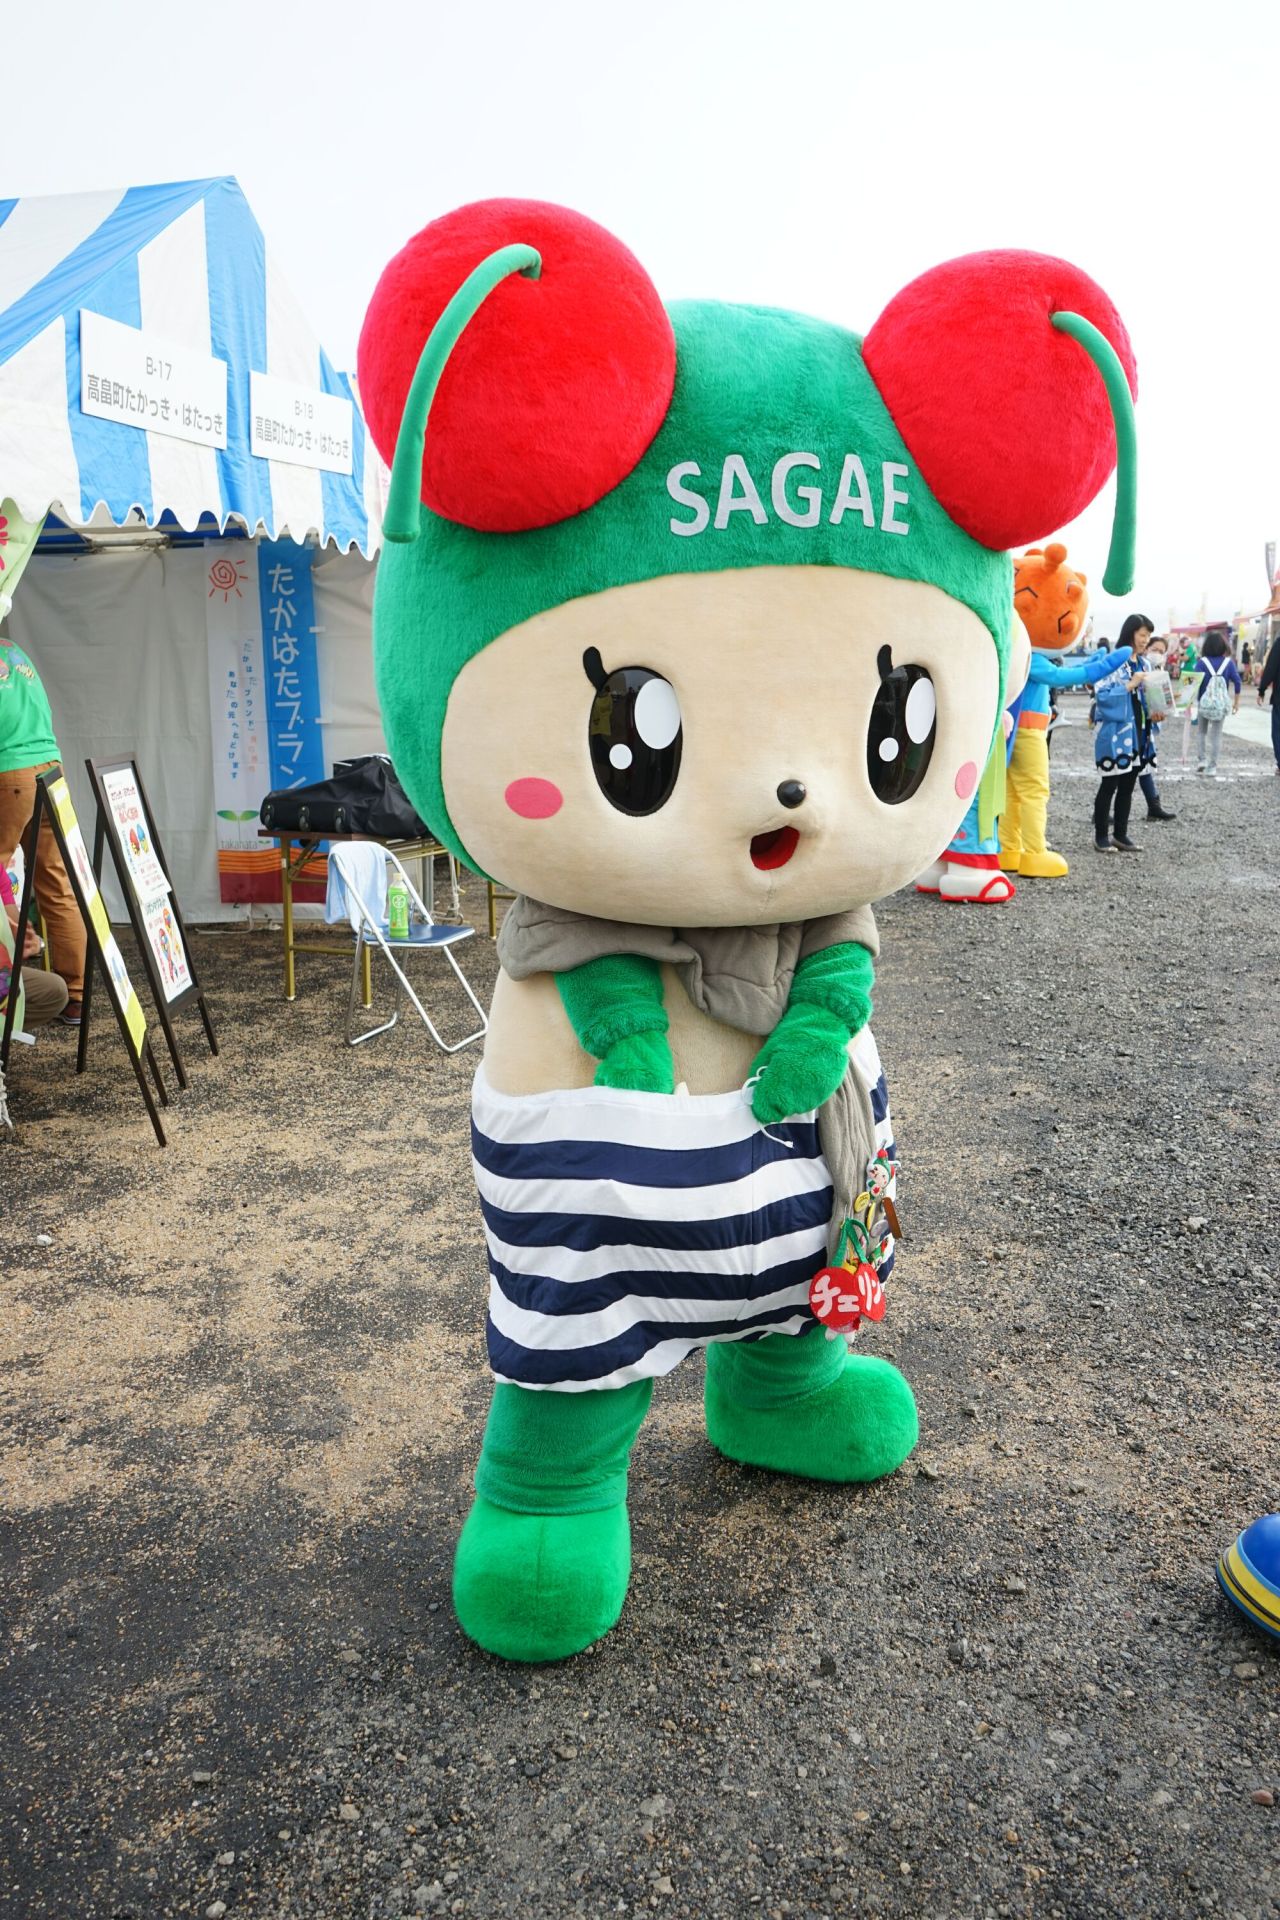 Japanese Mascot Photograph Yuruchara Jp さくらんぼが店頭に並ぶようになったこのごろ